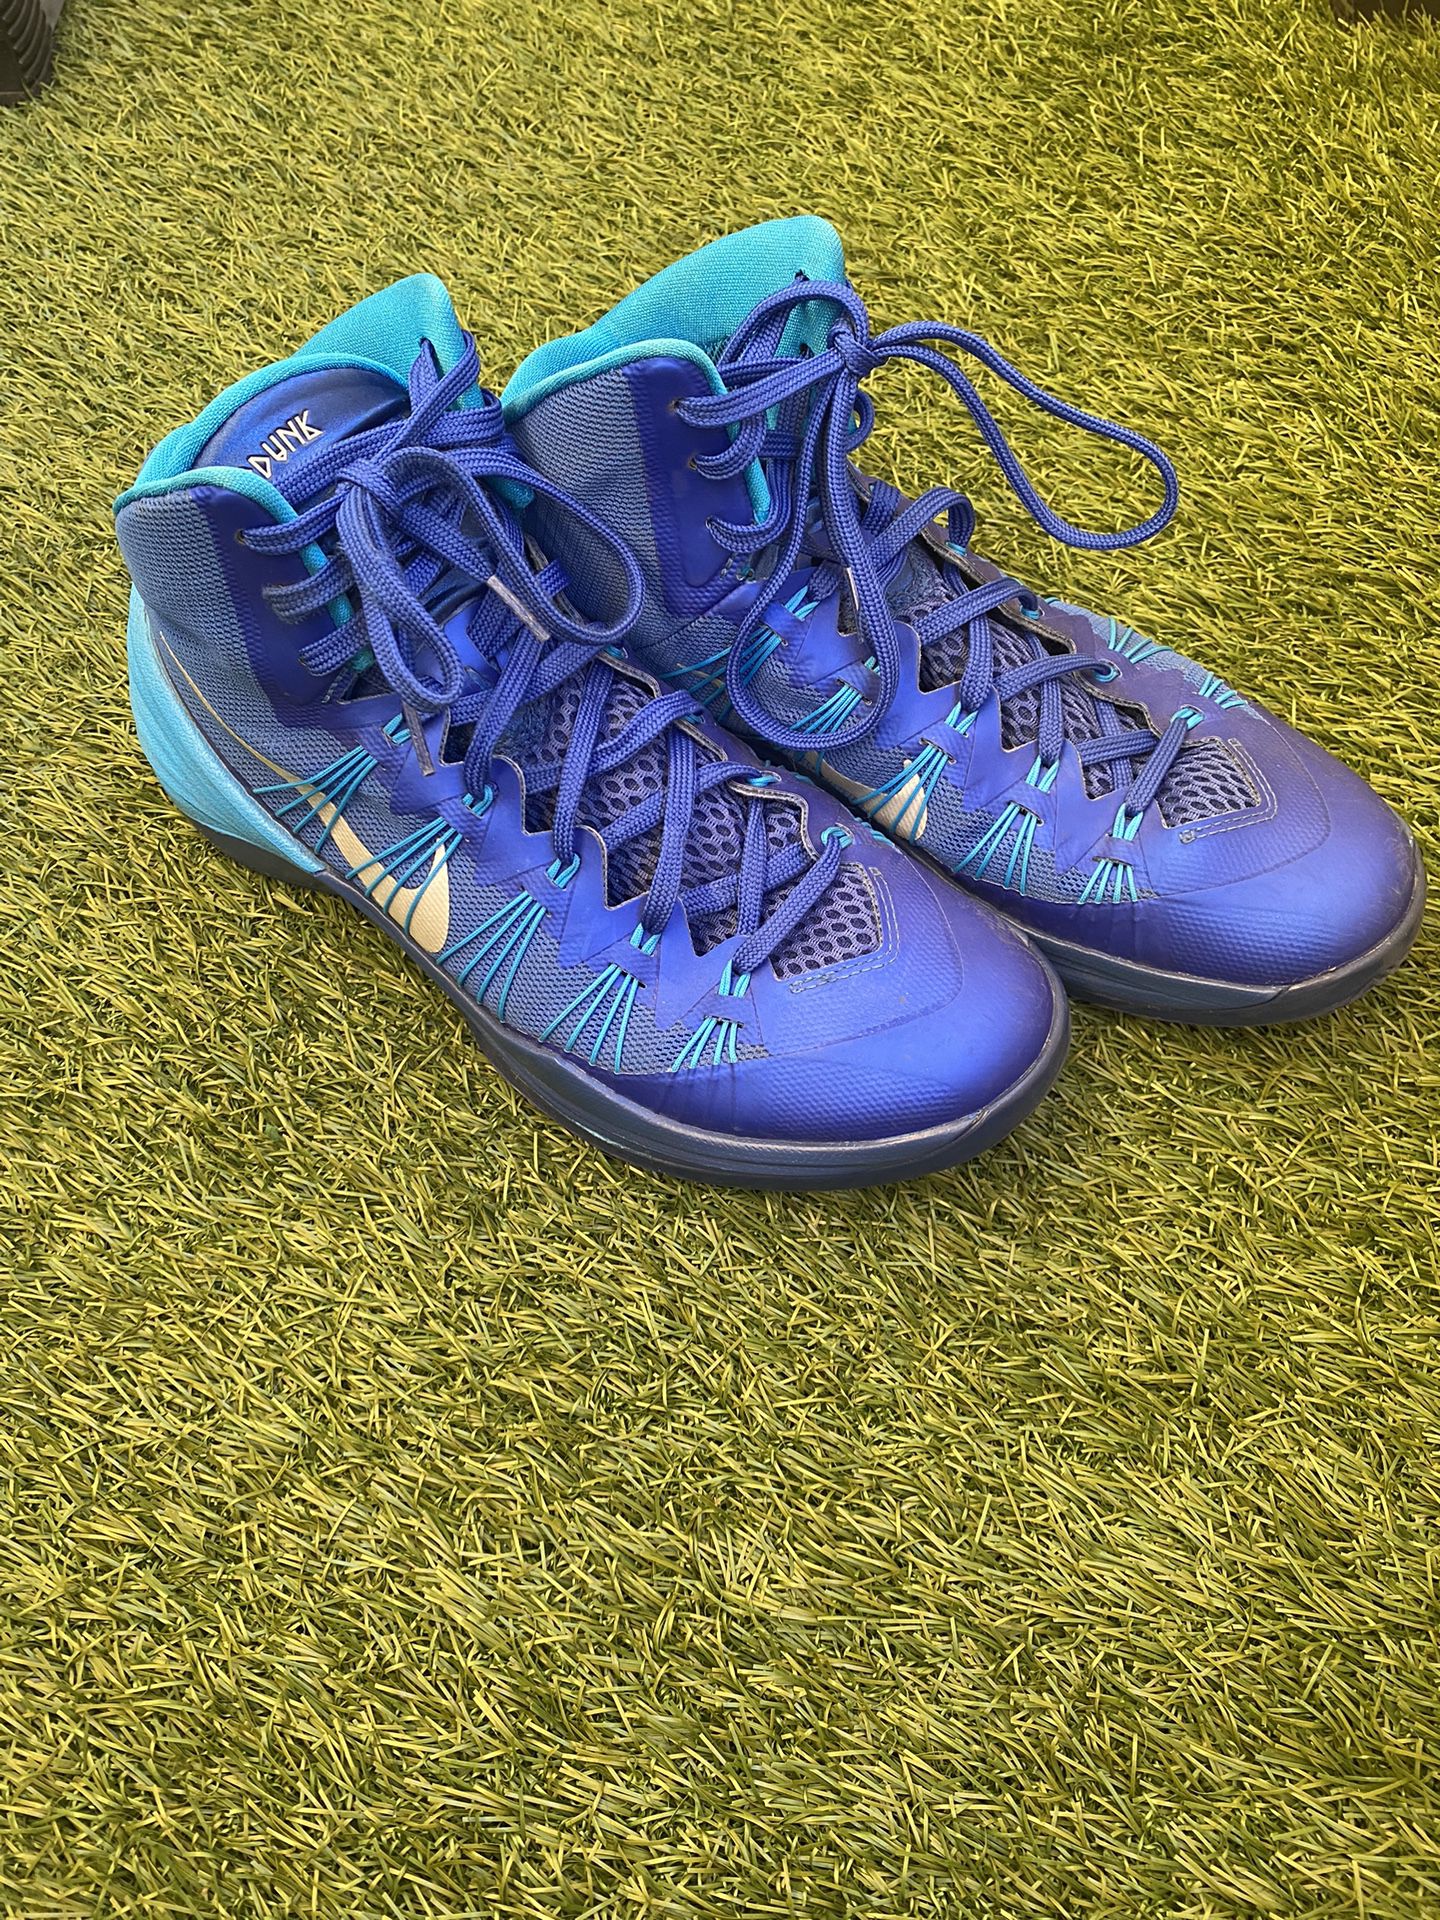 Nike Hyperdunk 2013 Basketball Shoes